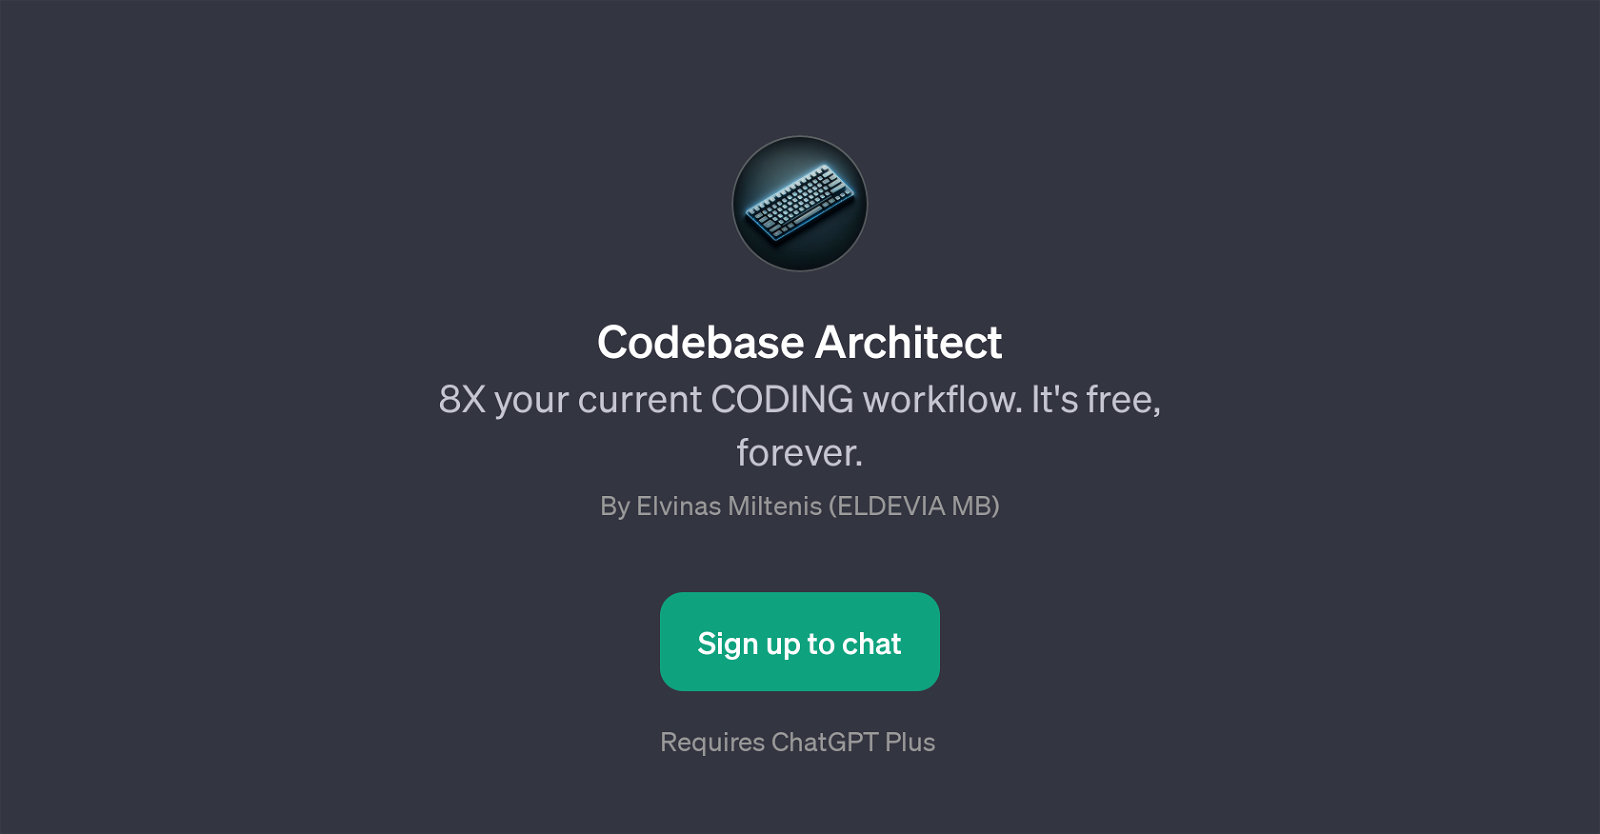 Codebase Architect website